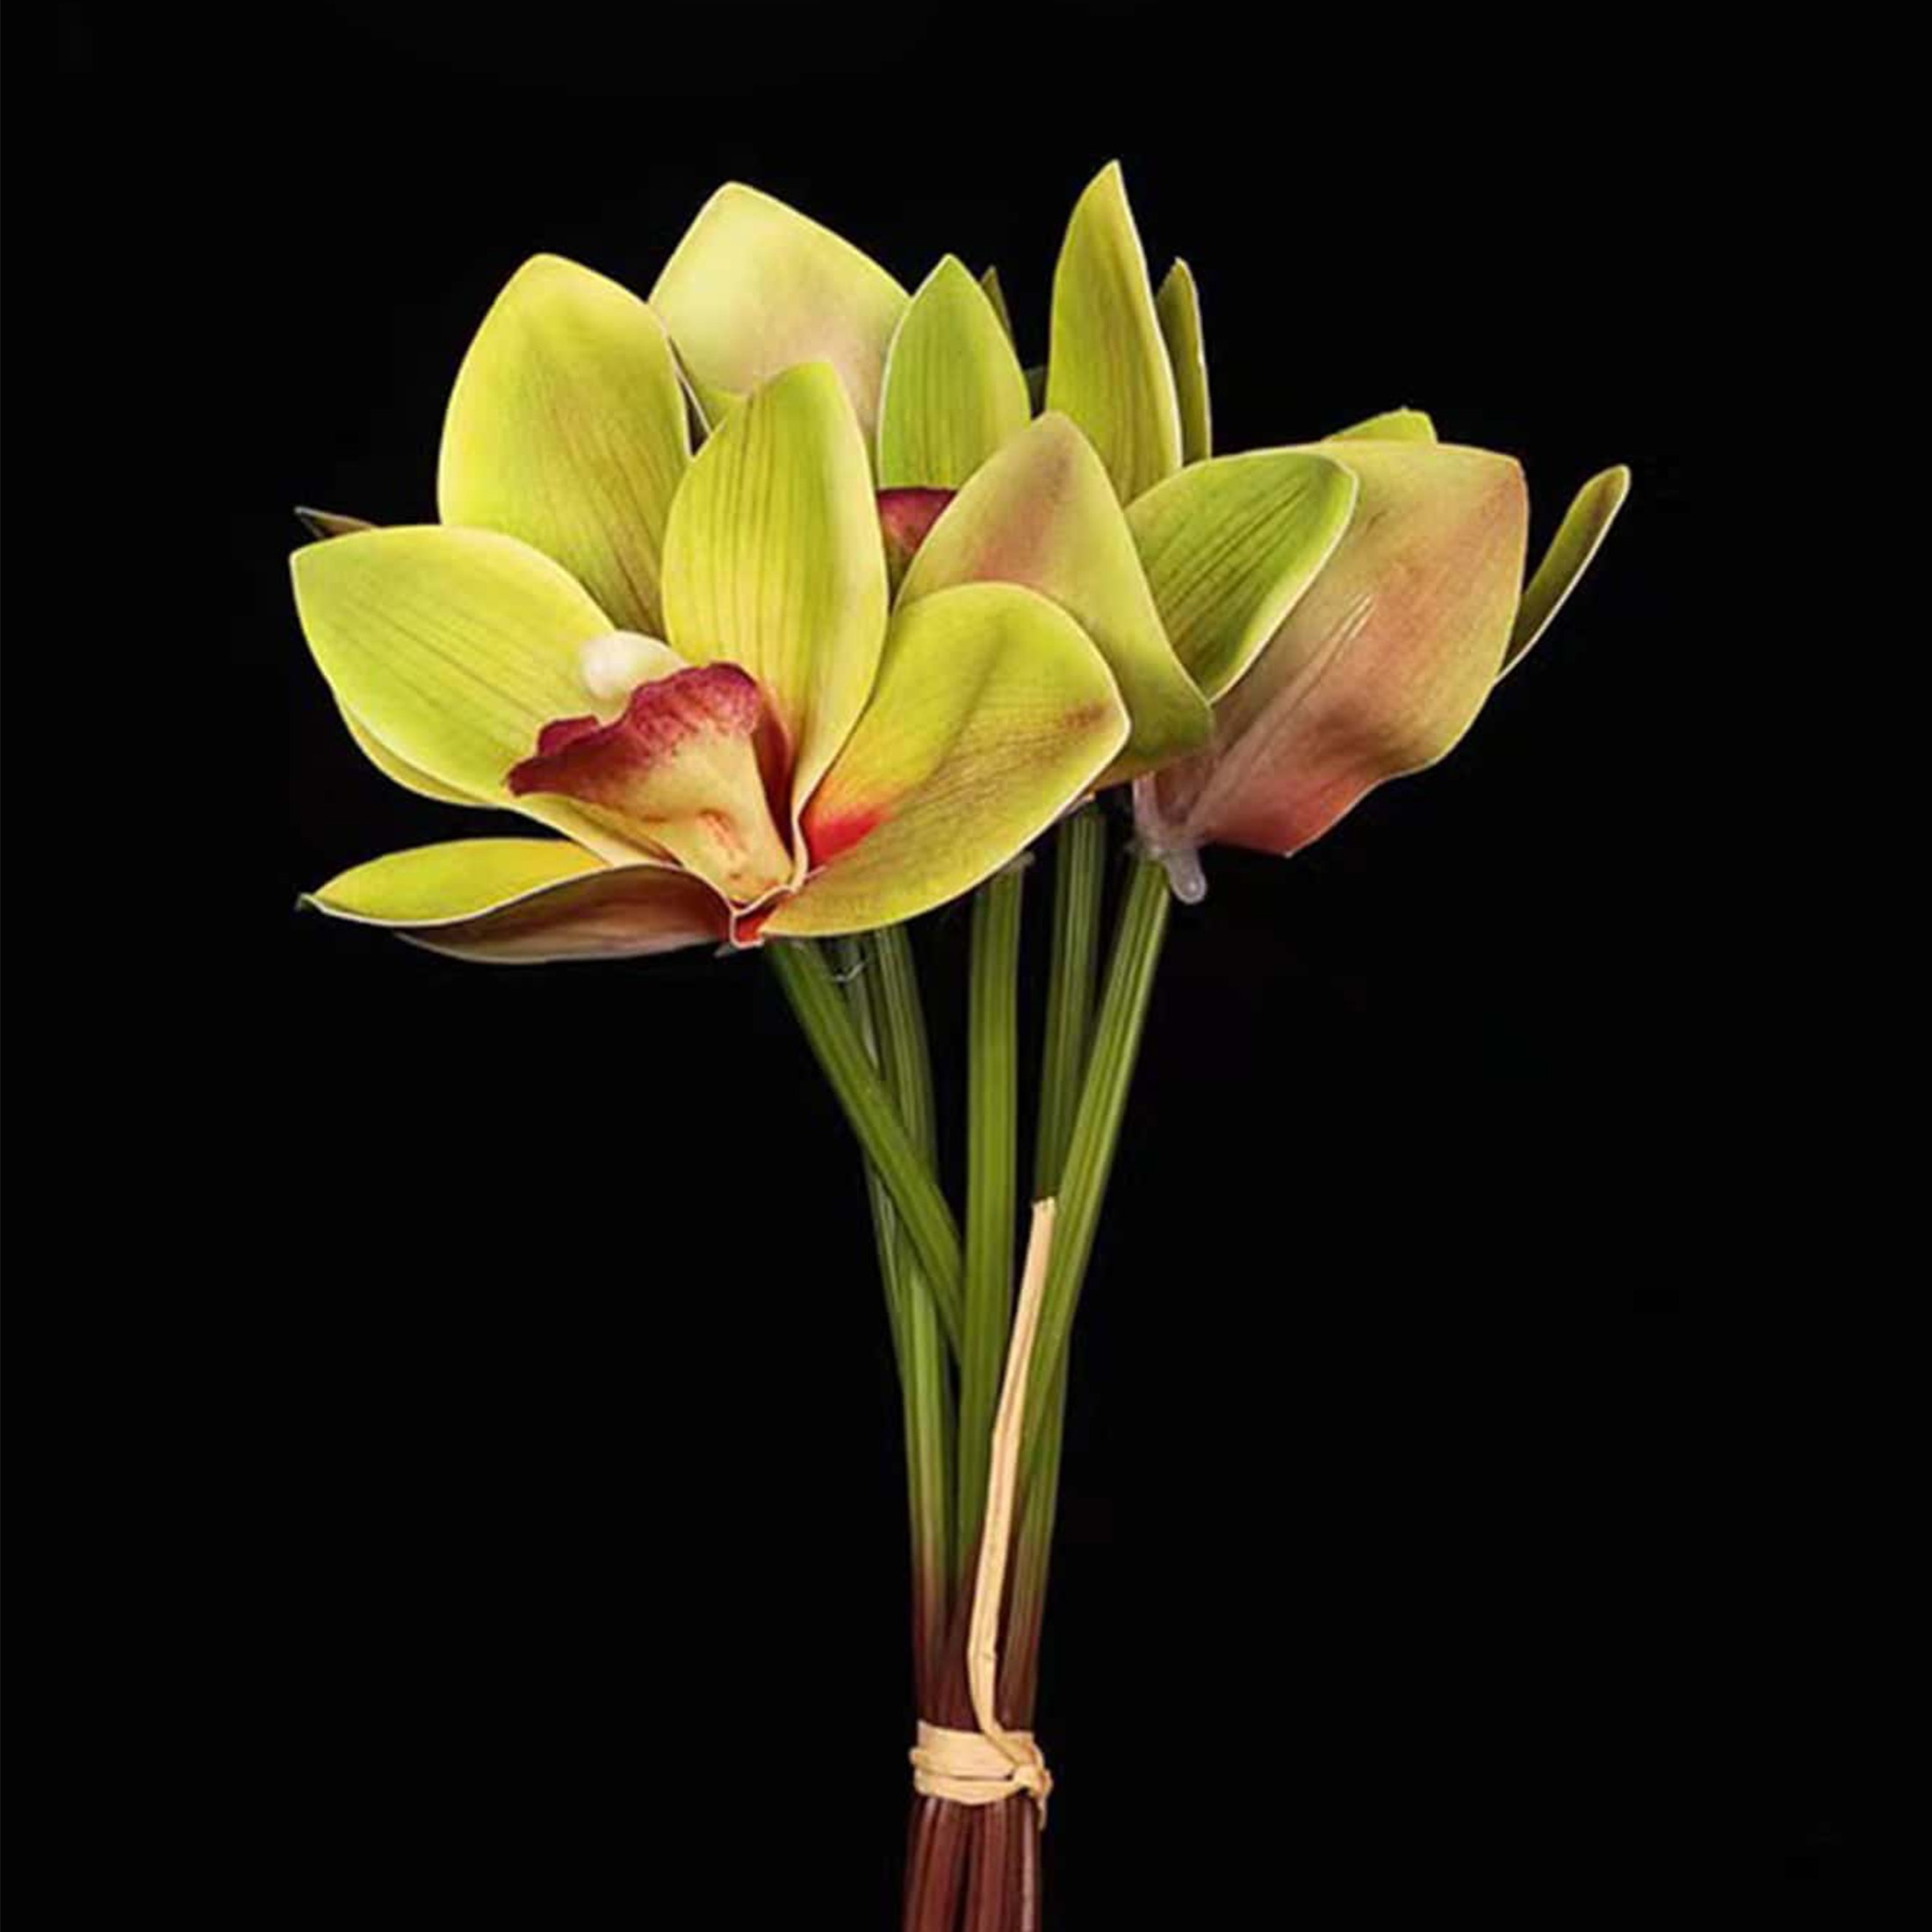 

6pcs Orchid Artificial Flowers Cymbidium Flower Bridal Bouquet Wedding Flowers Decoration For Table Arrangement